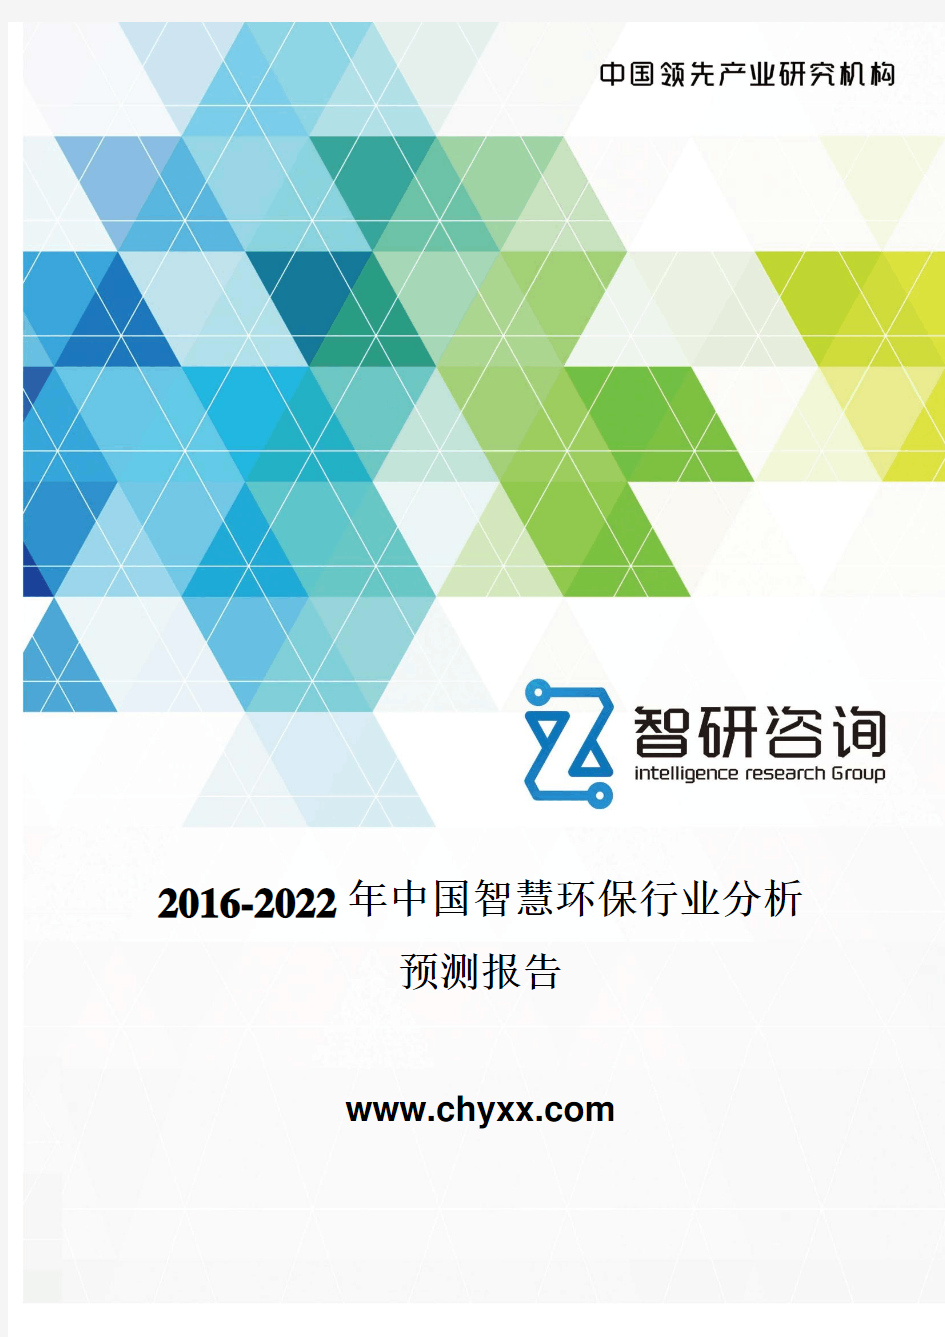 2016-2022年中国智慧环保行业分析报告